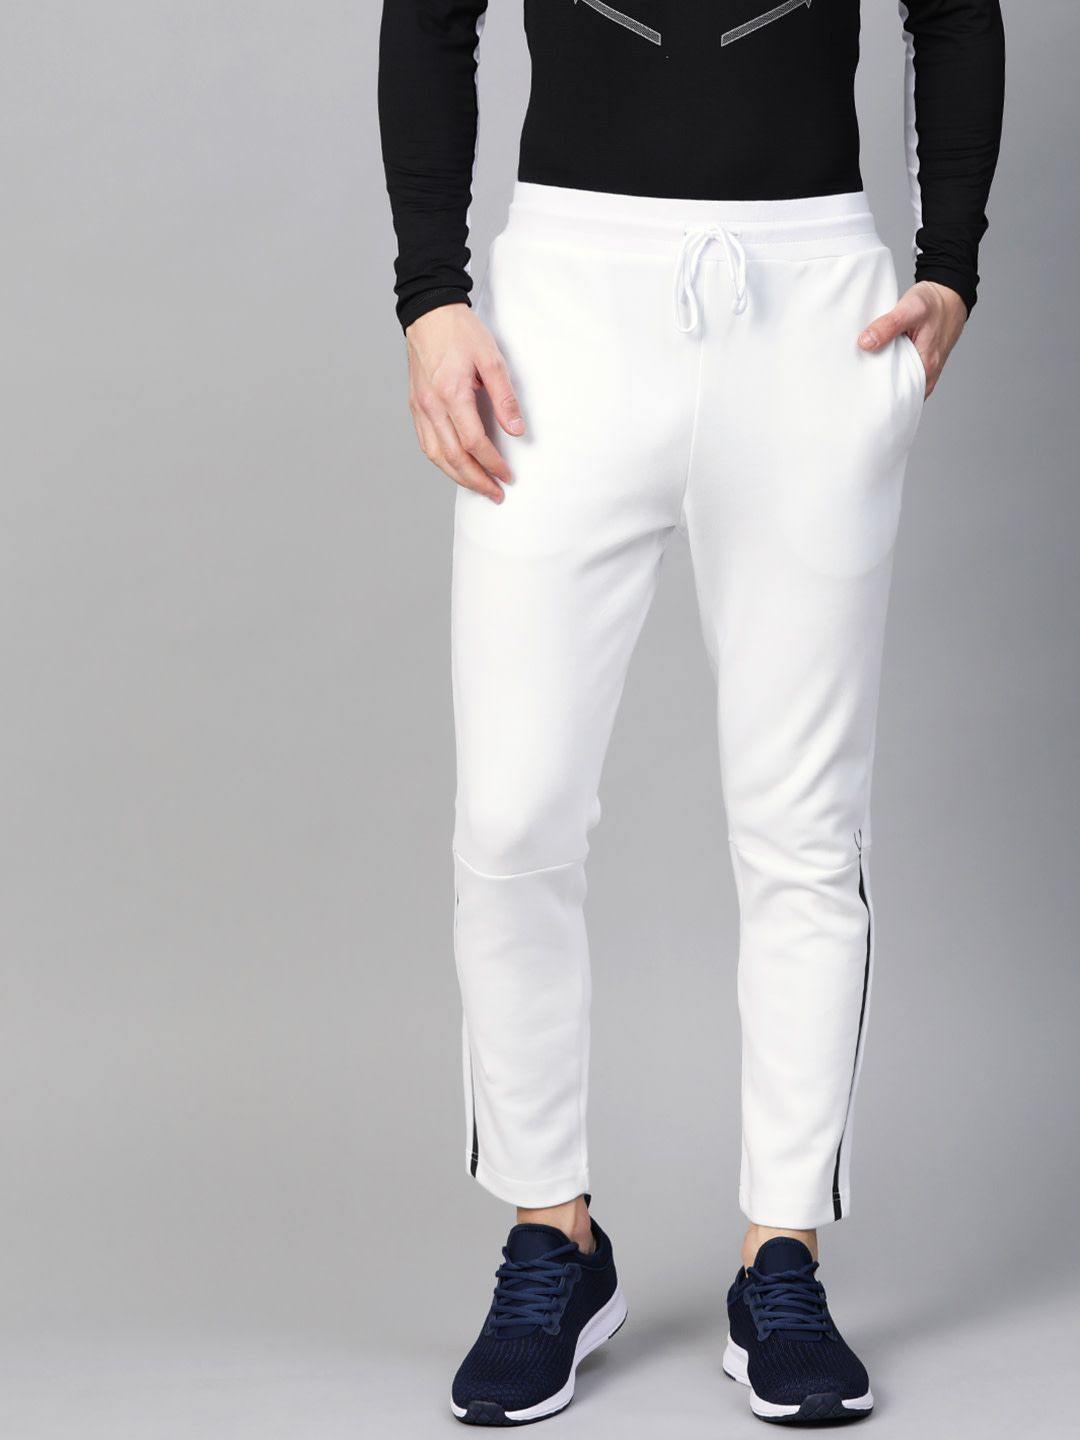 Men's White Color Cotton Slim Fit Pant - Absolutely Desi